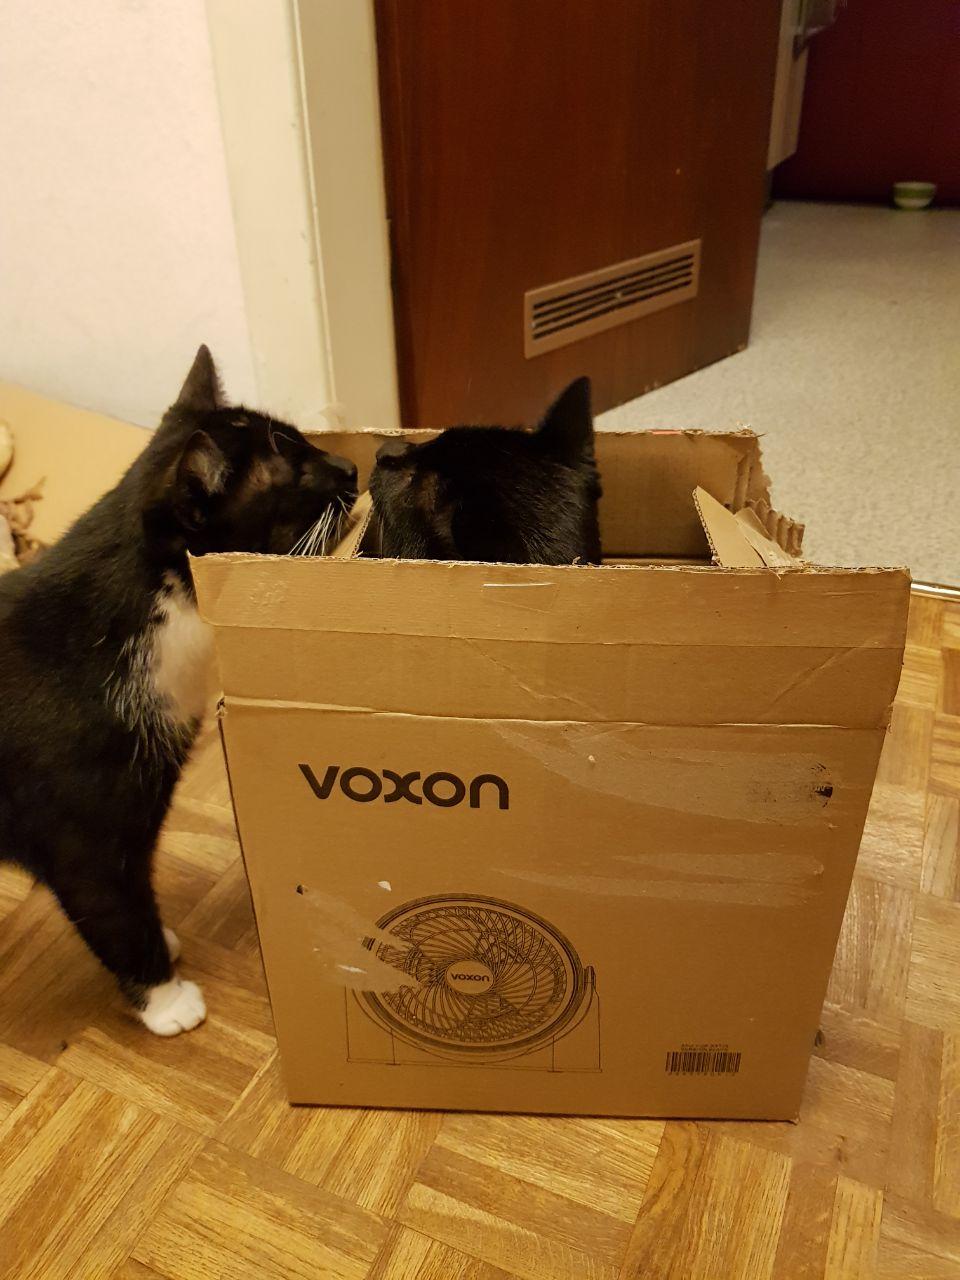 Zwei Katzen, eine davon sitzt im Pappkarton